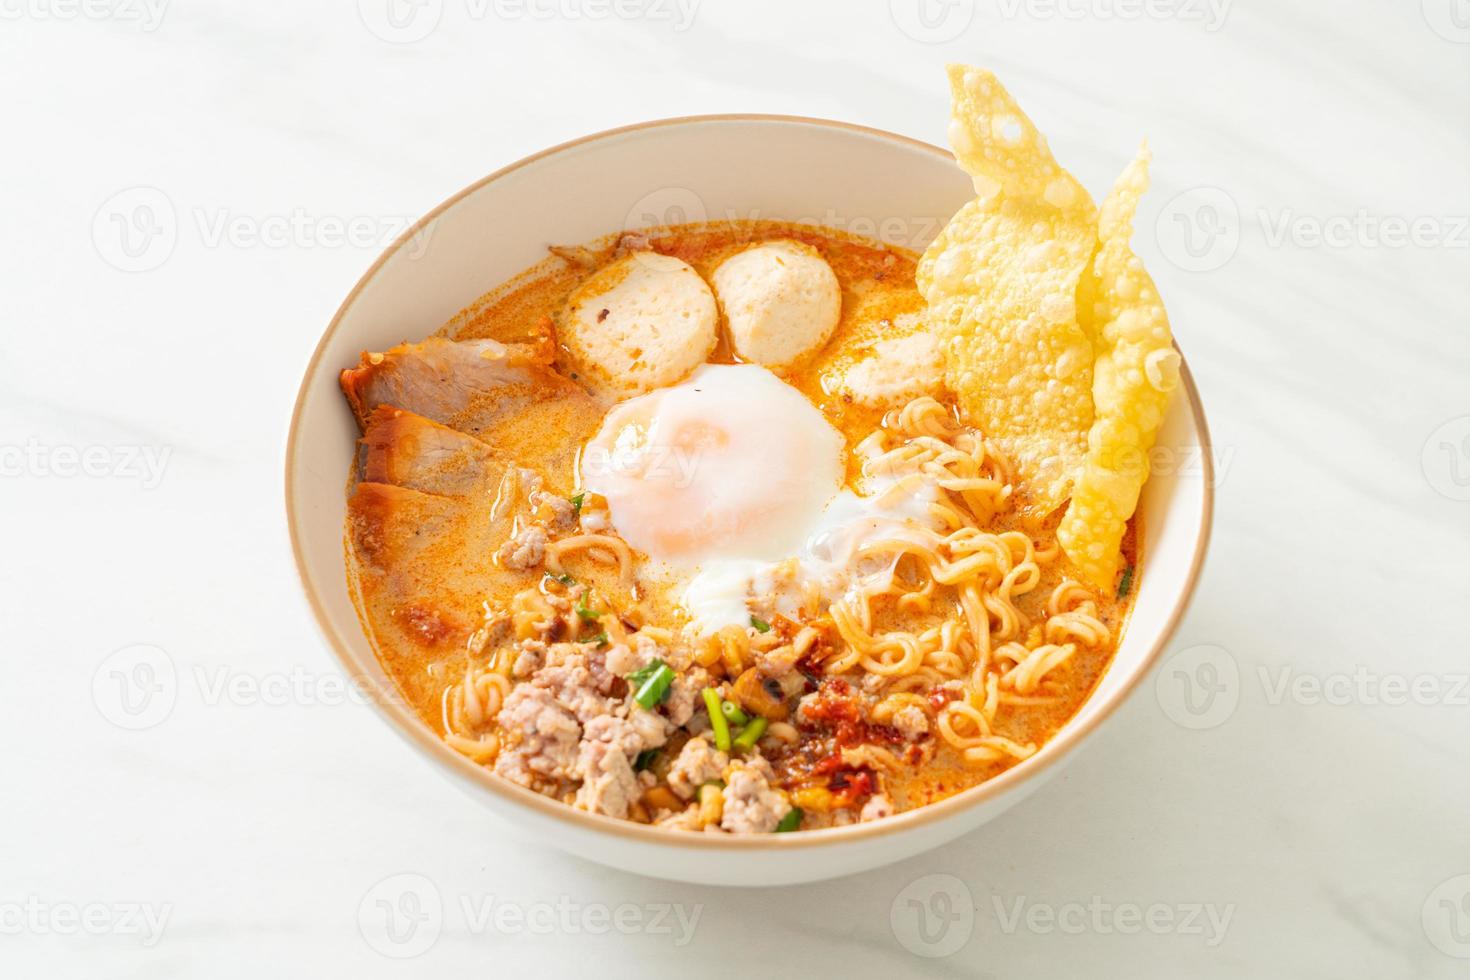 nouilles instantanées au porc et boulettes de viande dans une soupe épicée ou nouilles tom yum à l'asiatique photo